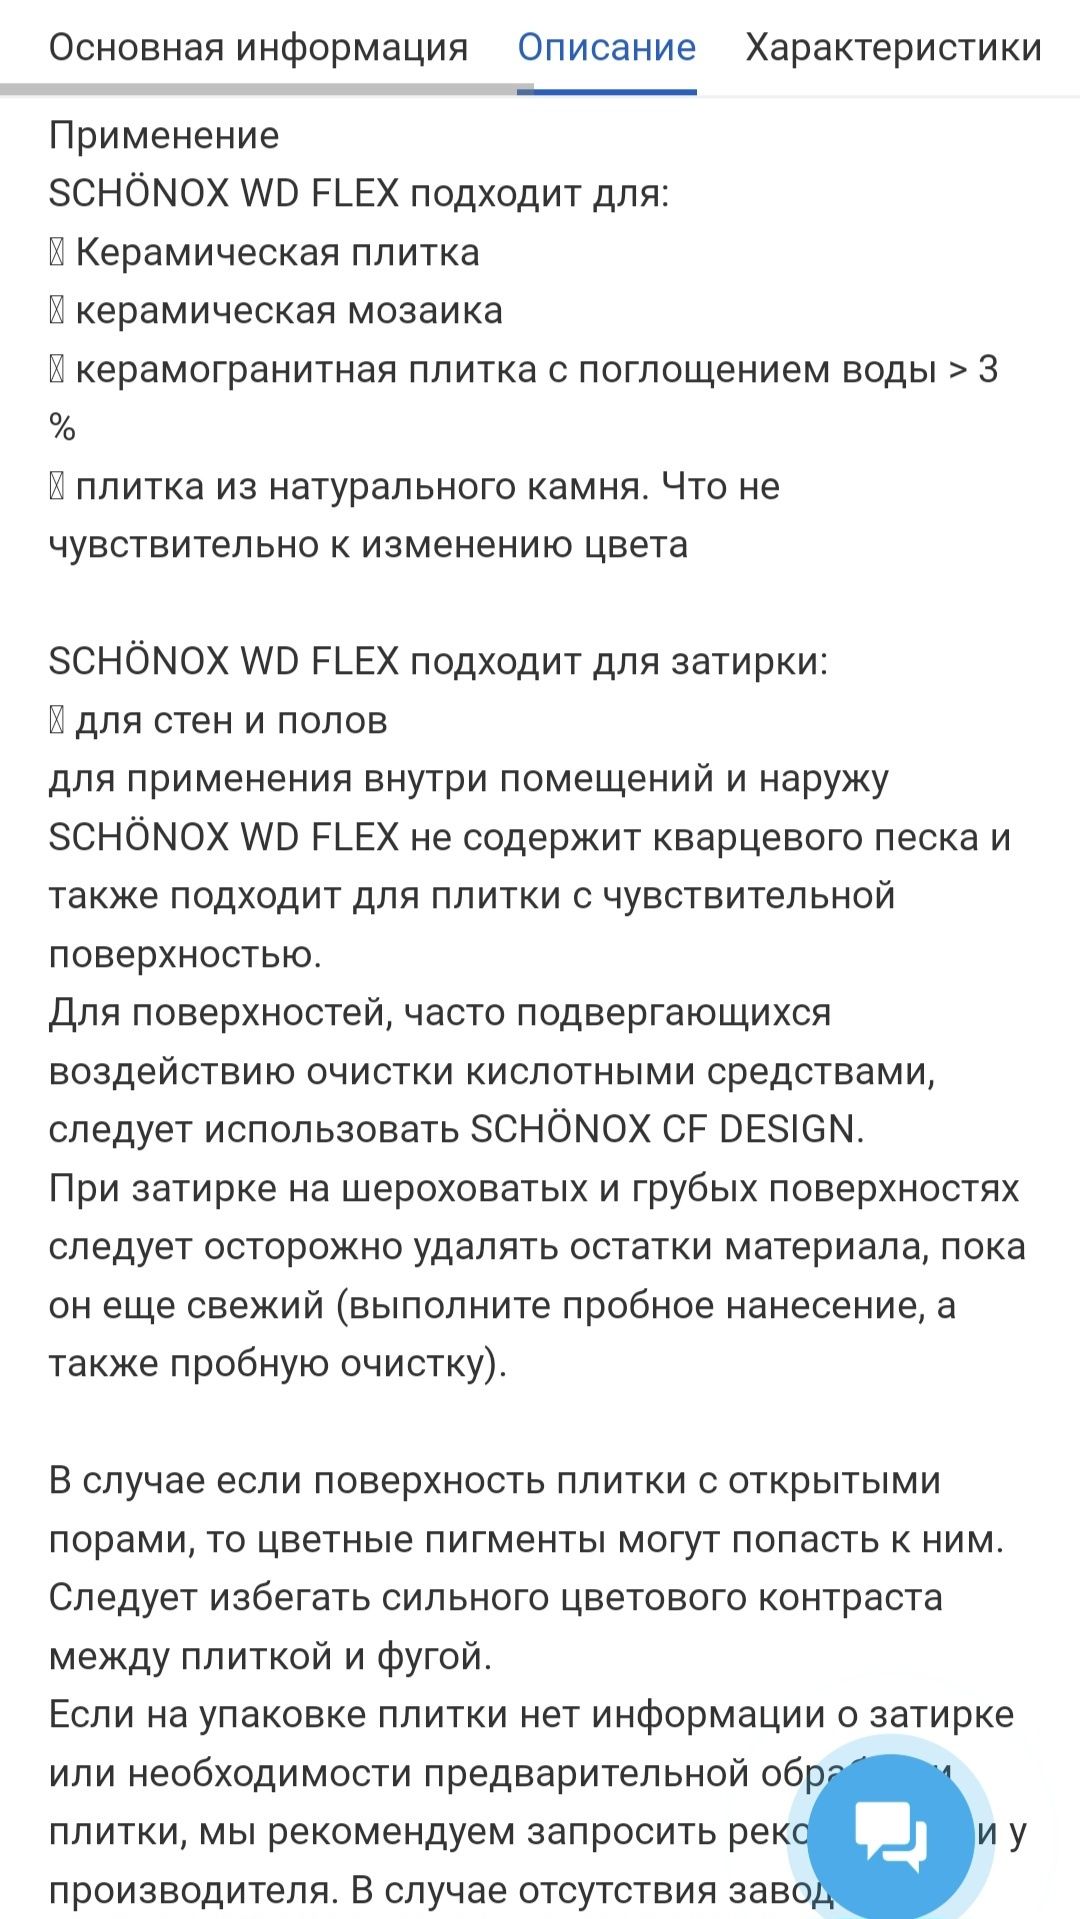 Фуга Sika Цементная Эластическая SCHONOX WD FLEX (1-6ММ) 2кг пакет бел